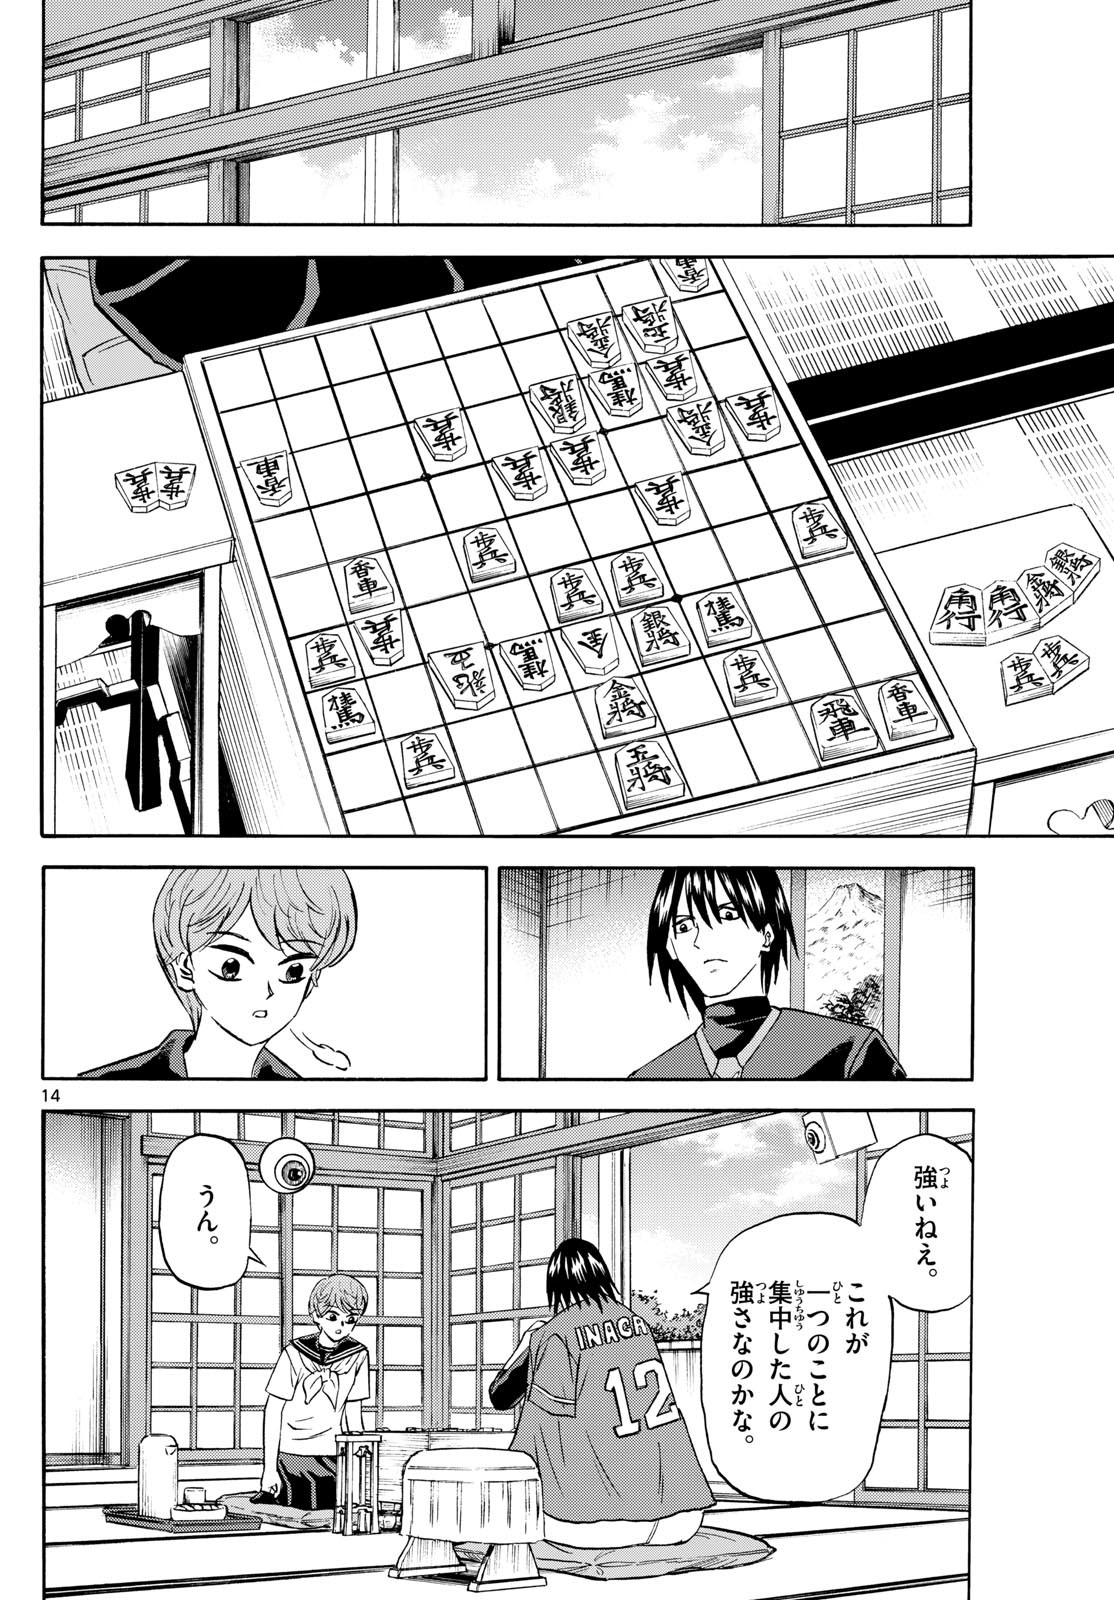 Ryu-to-Ichigo - Chapter 198 - Page 14